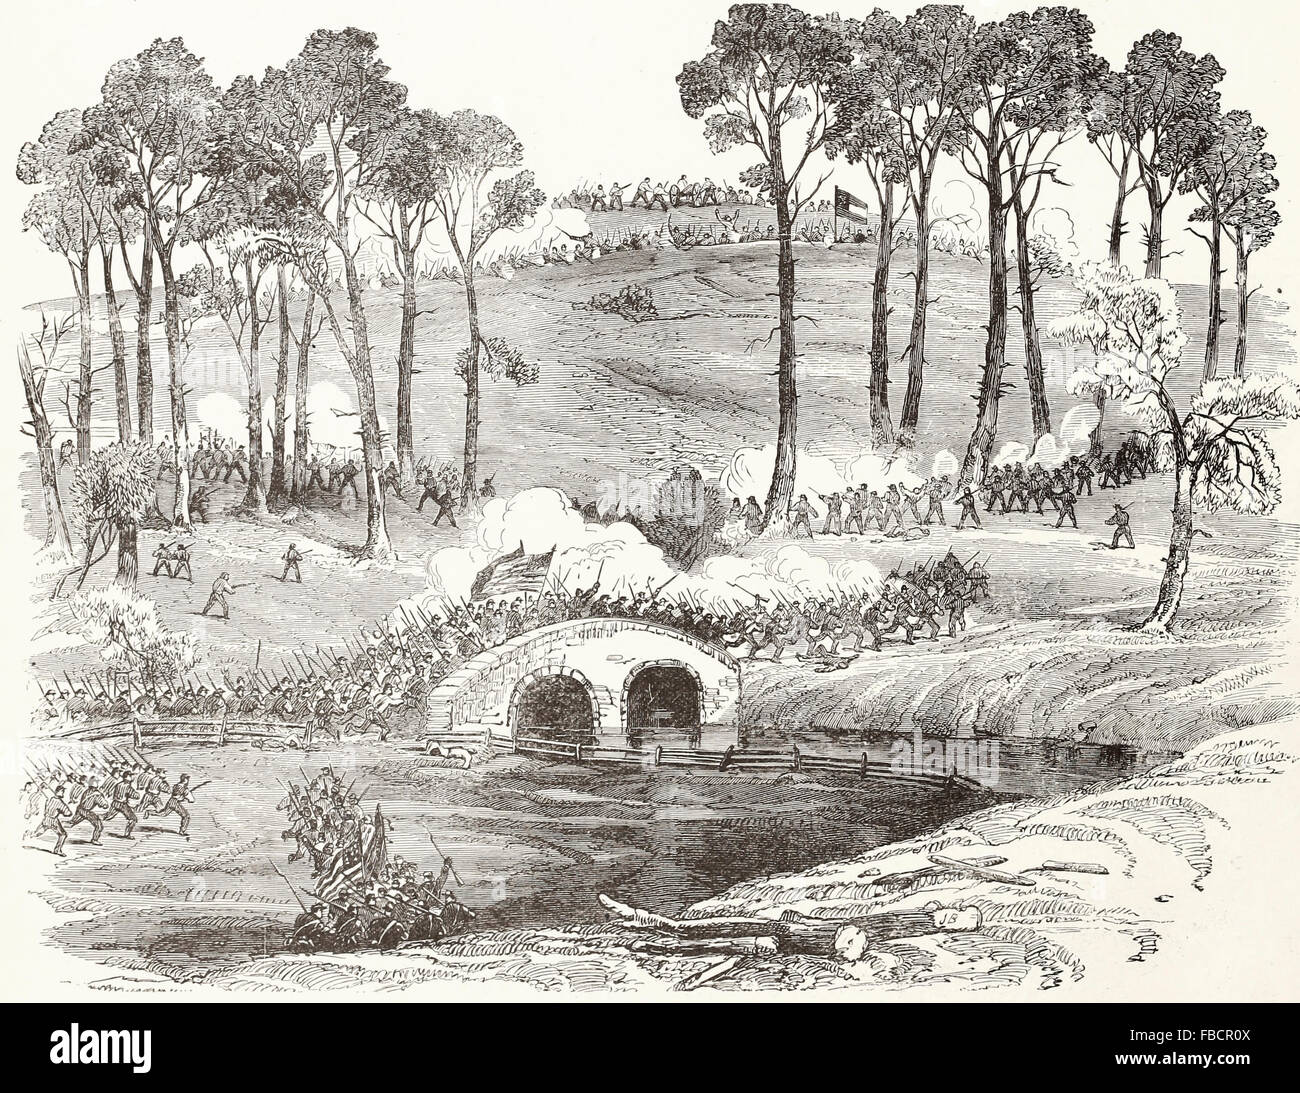 Schlacht von Antietam, Maryland - Burnside Abteilung trägt die Brücke über den Antietam Creek und Stürmen die Konföderierte Position nach einem verzweifelten Konflikt von vier Stunden, 17. September 1862. USA Bürgerkrieg Stockfoto